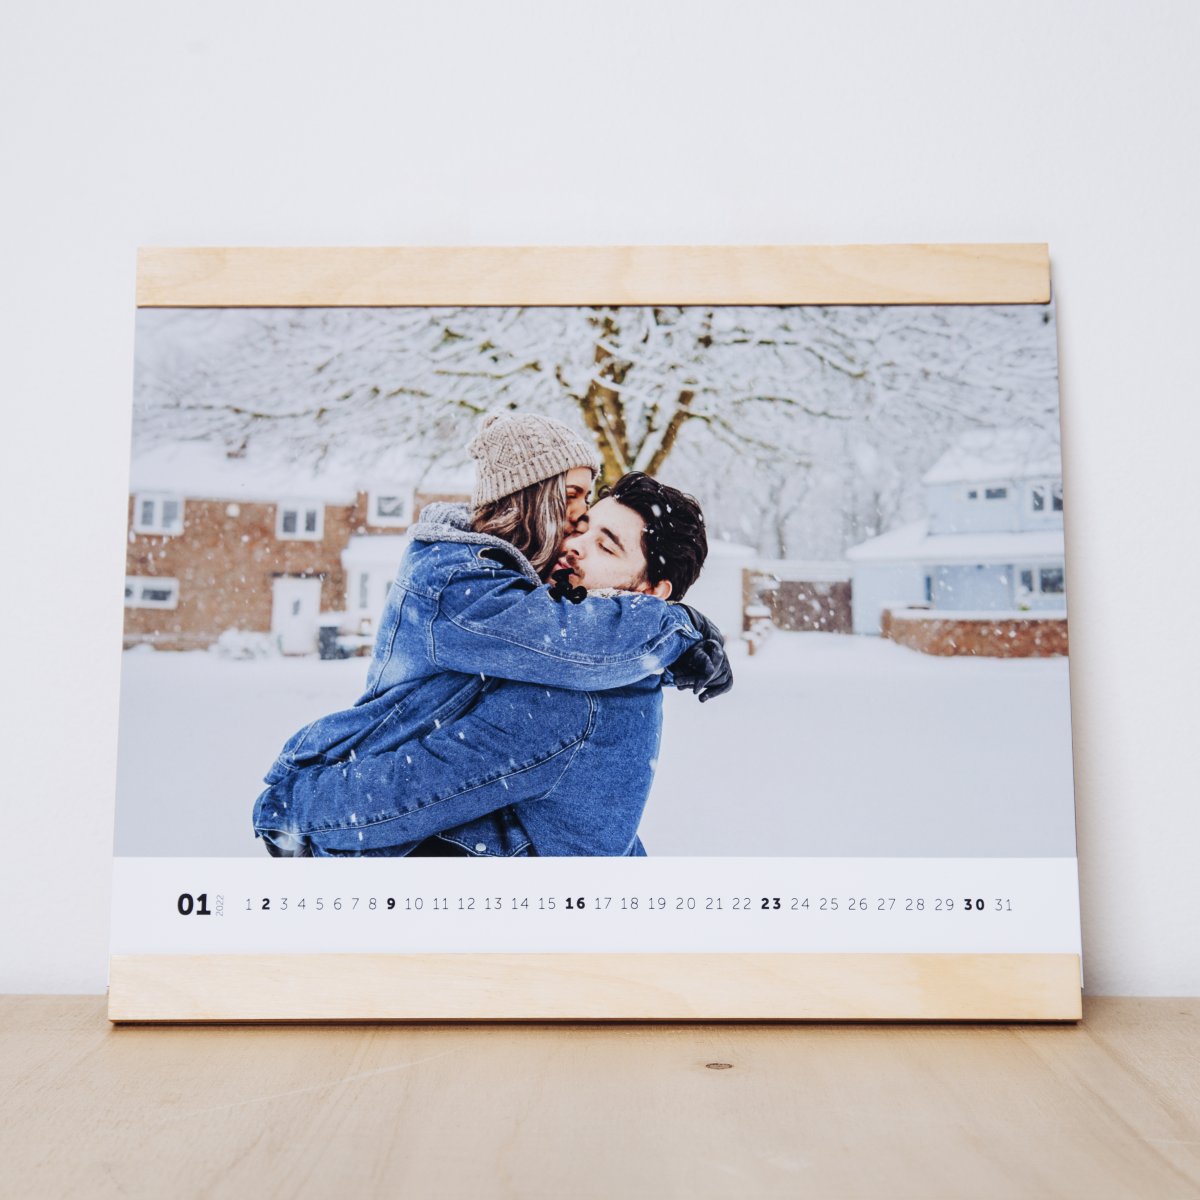 Nástěnný kalendář s fotkou zamilovaného páru.